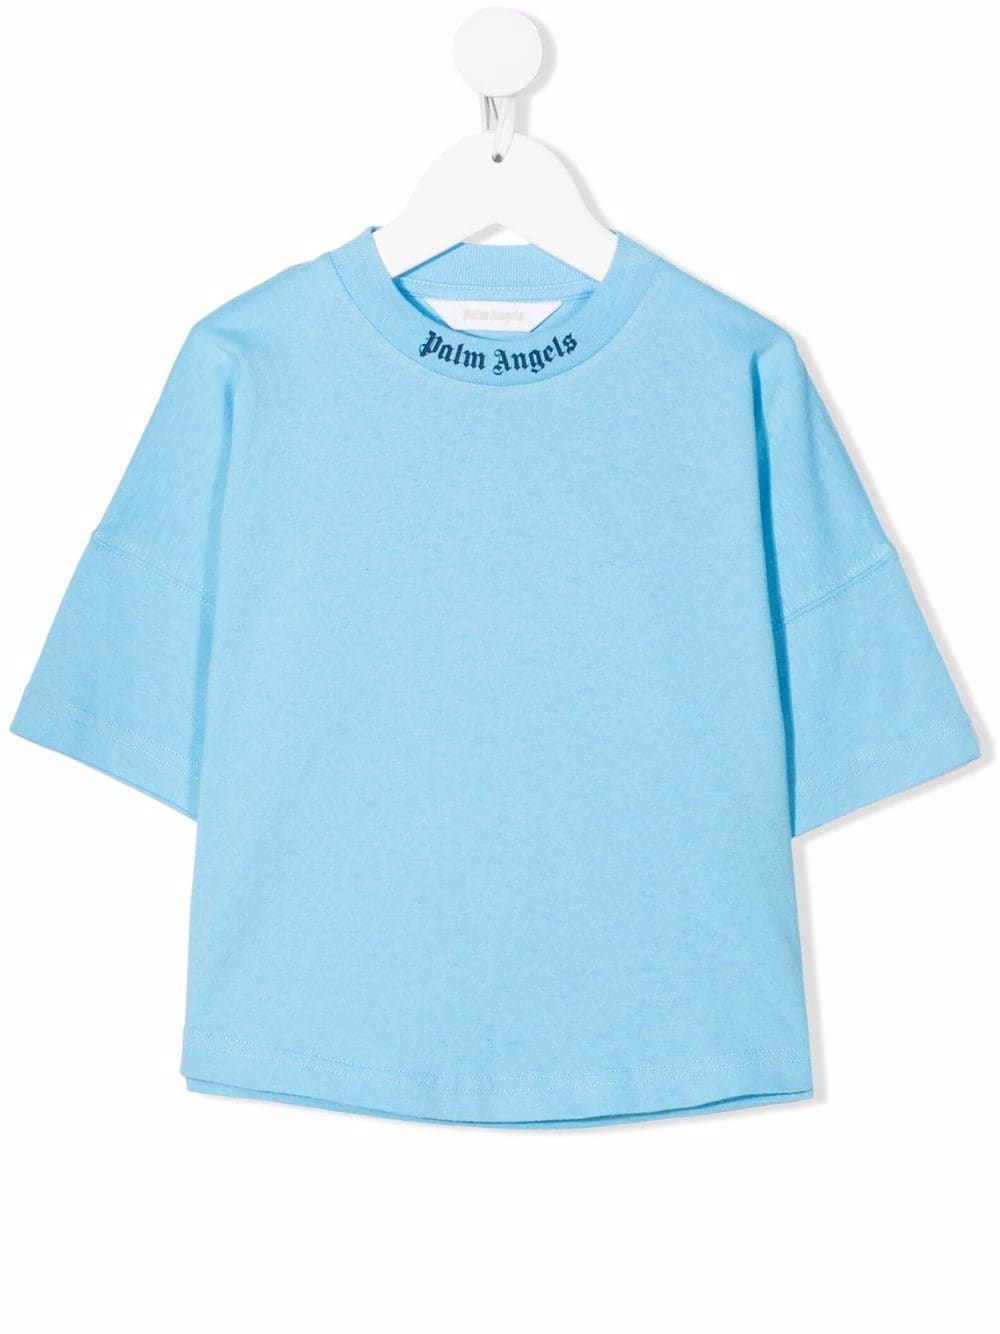 Palm Angels Kids Light Blue Logo T-shirt